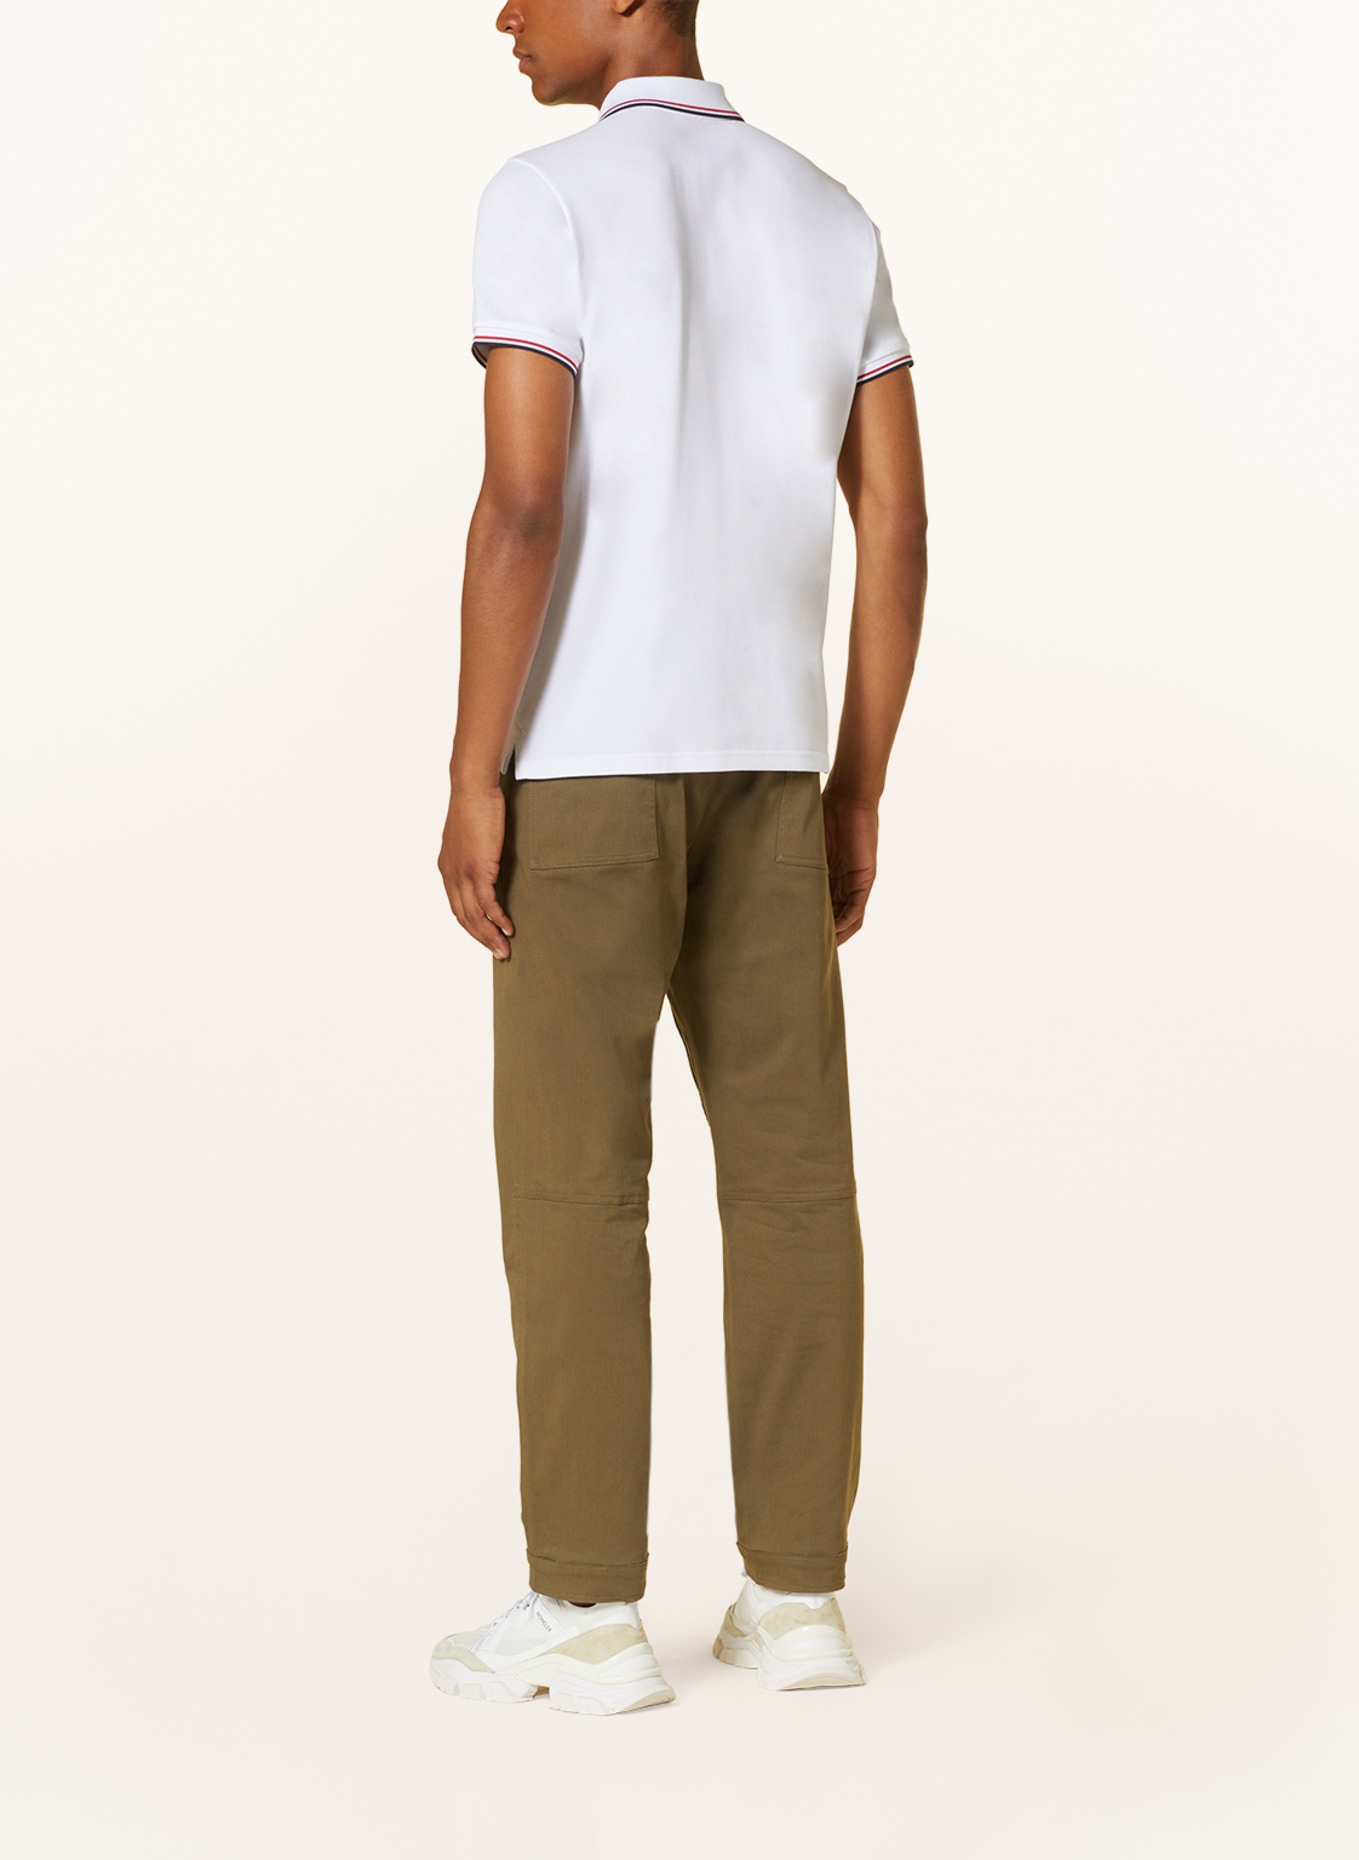 MONCLER Piqué polo shirt, Color: WHITE (Image 3)